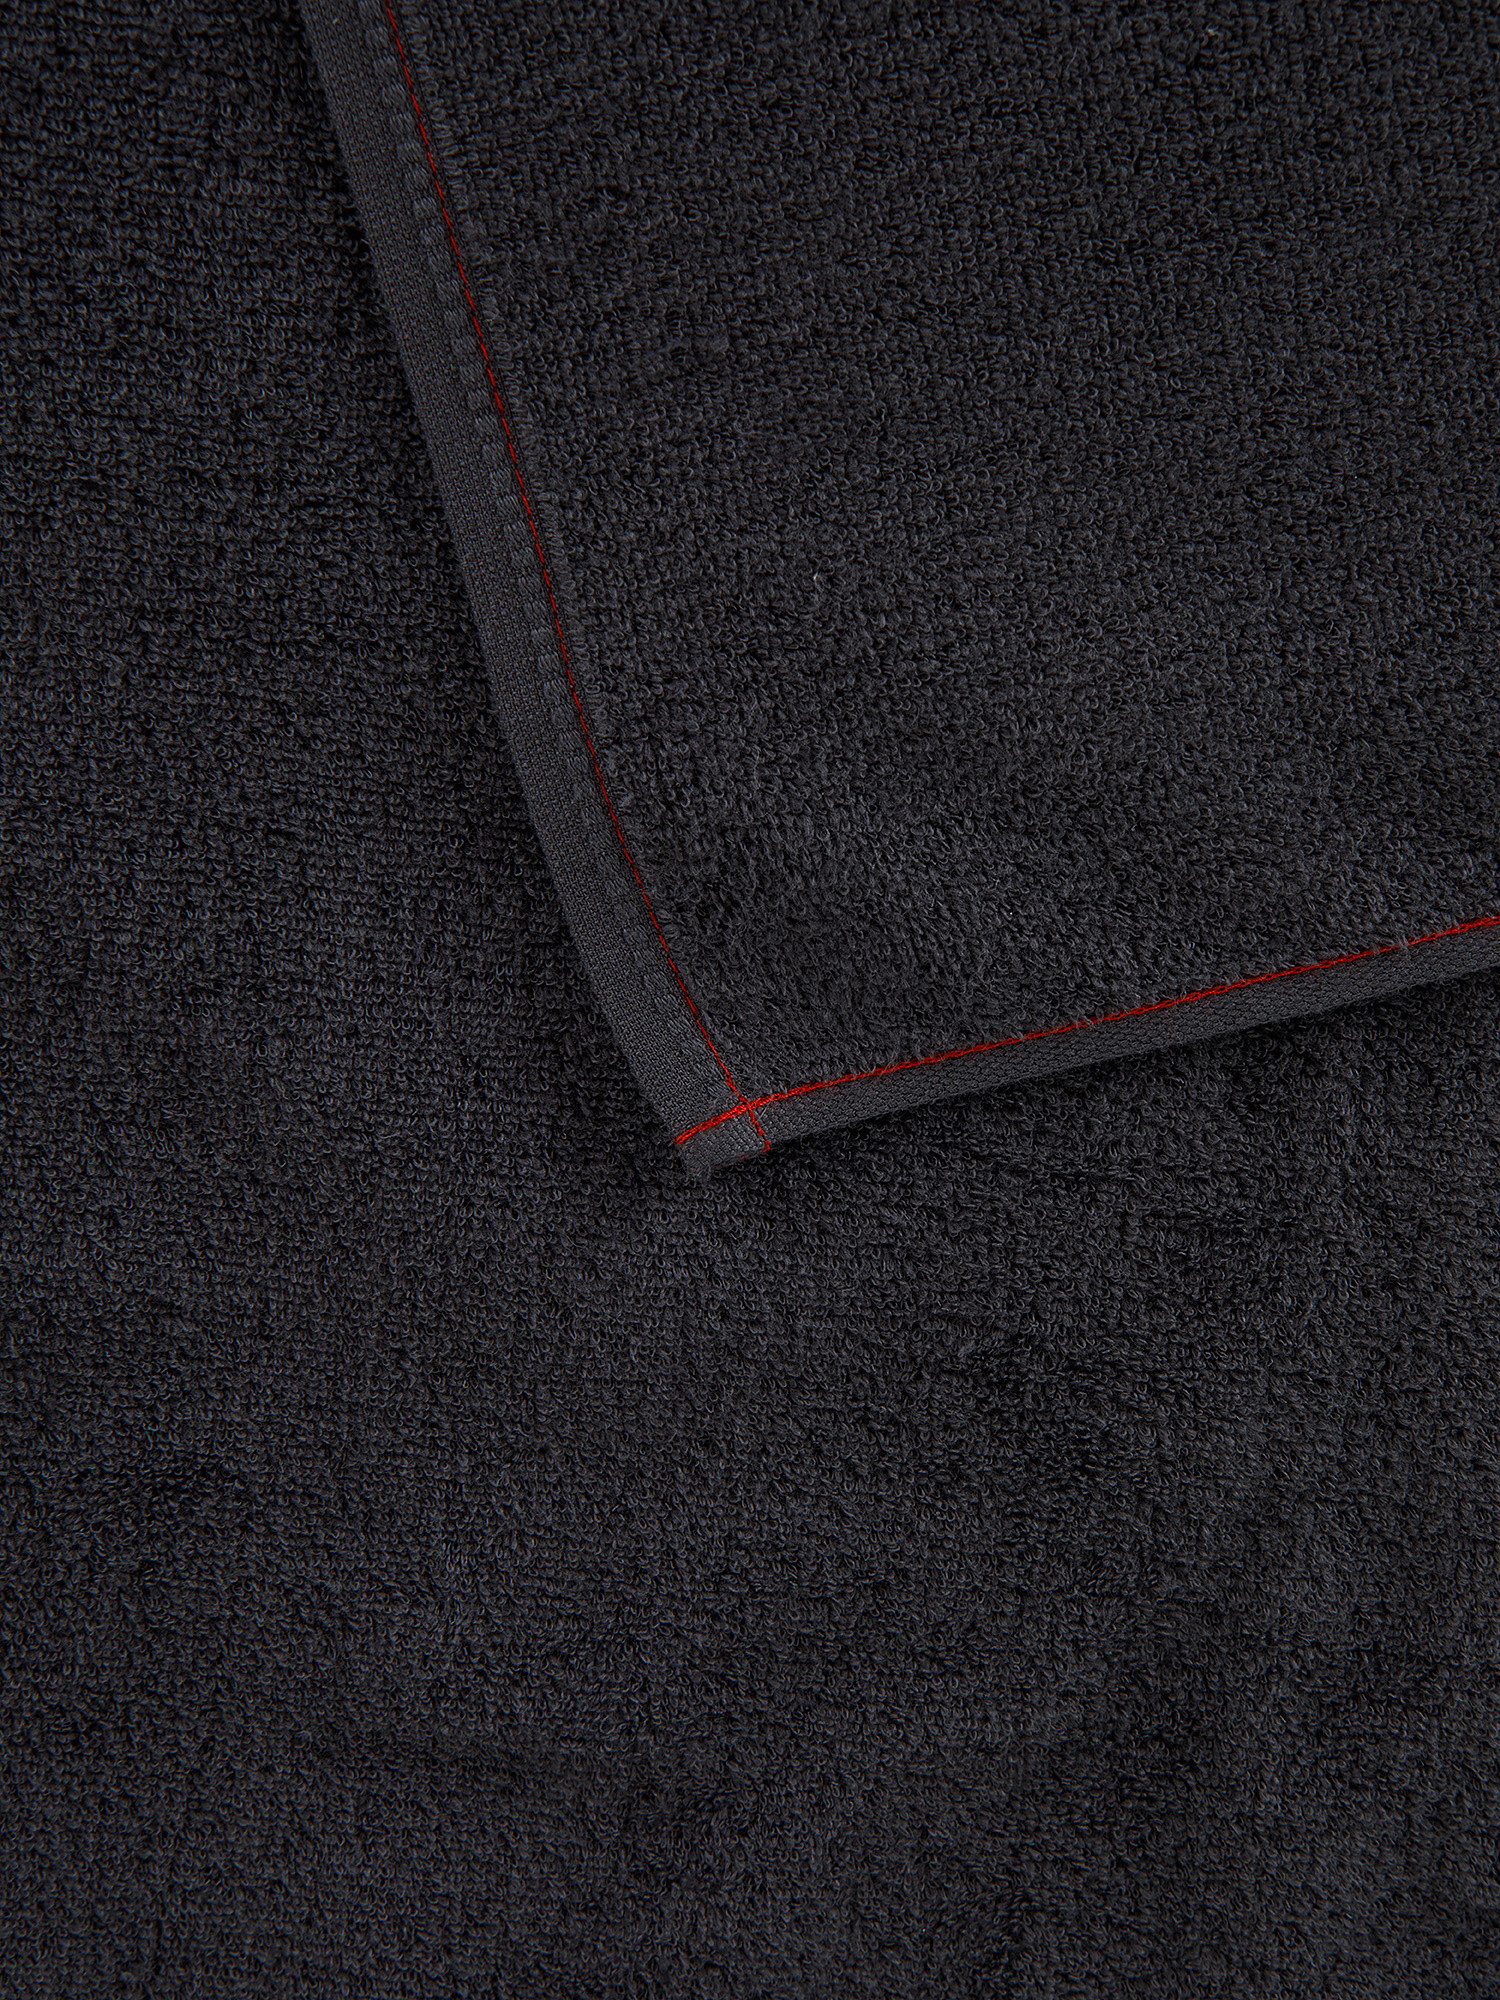 Asciugamano spugna sottile Thermae, Grigio scuro, large image number 2